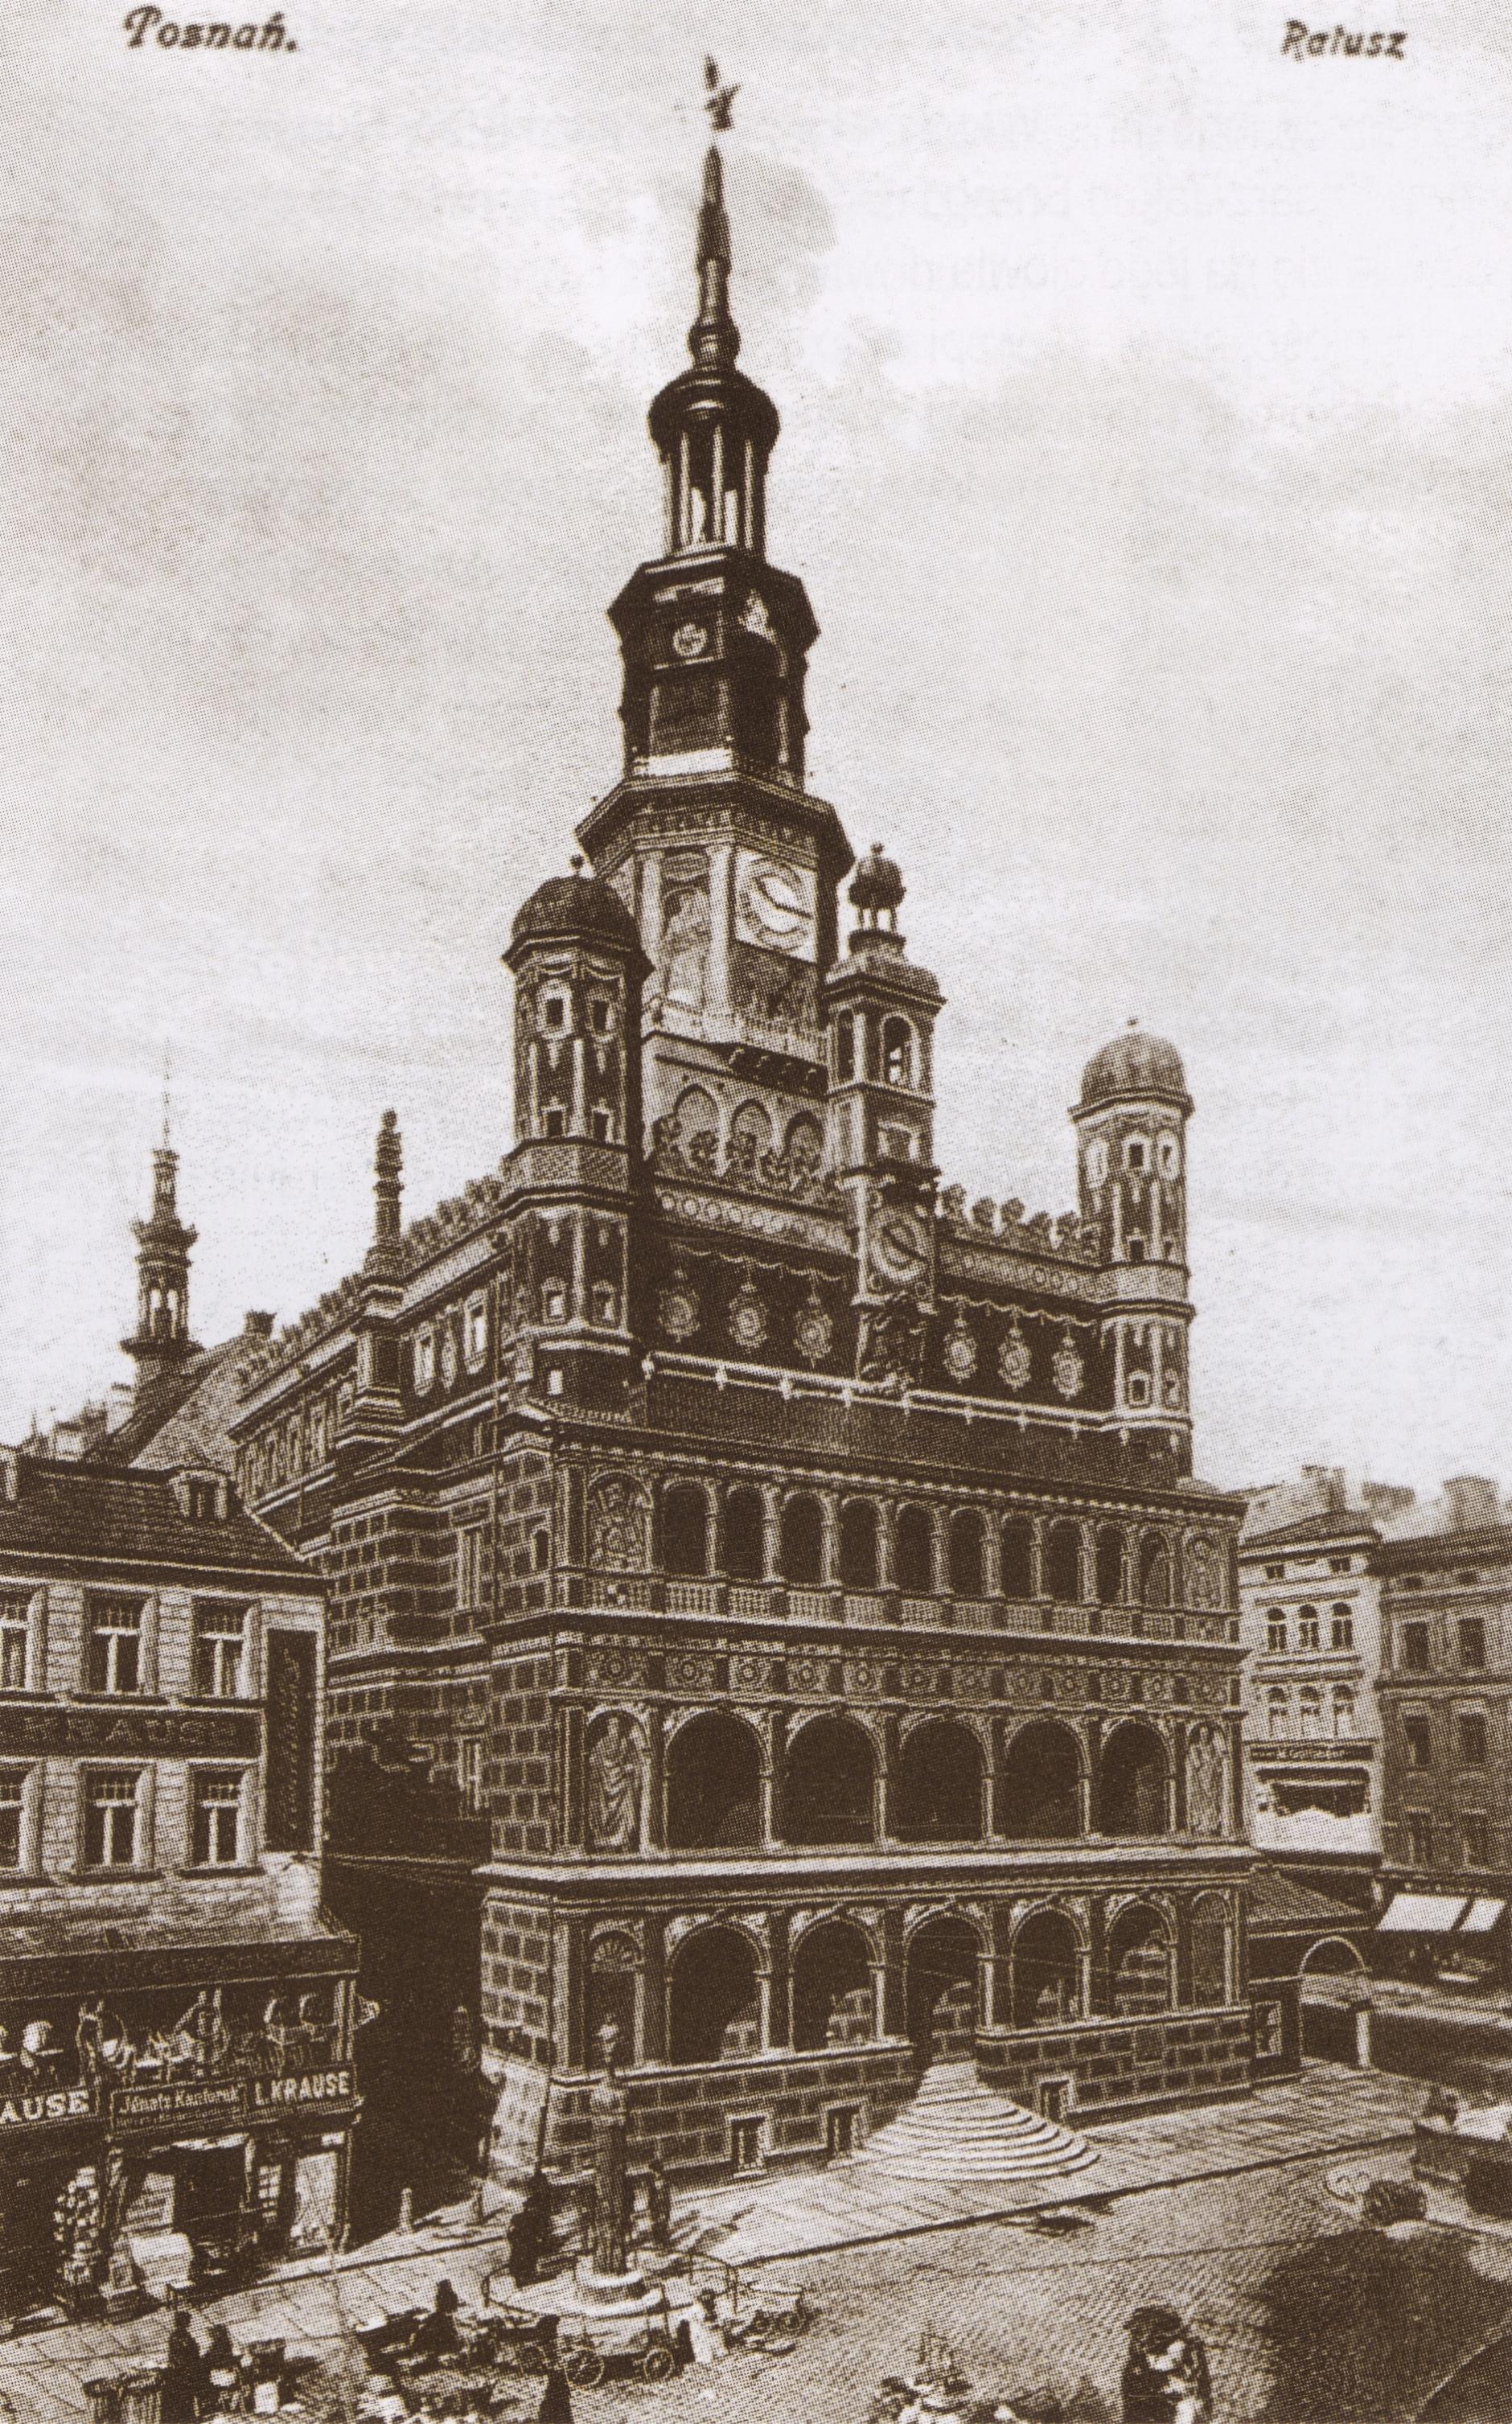 (1919-1939) Ratusz.